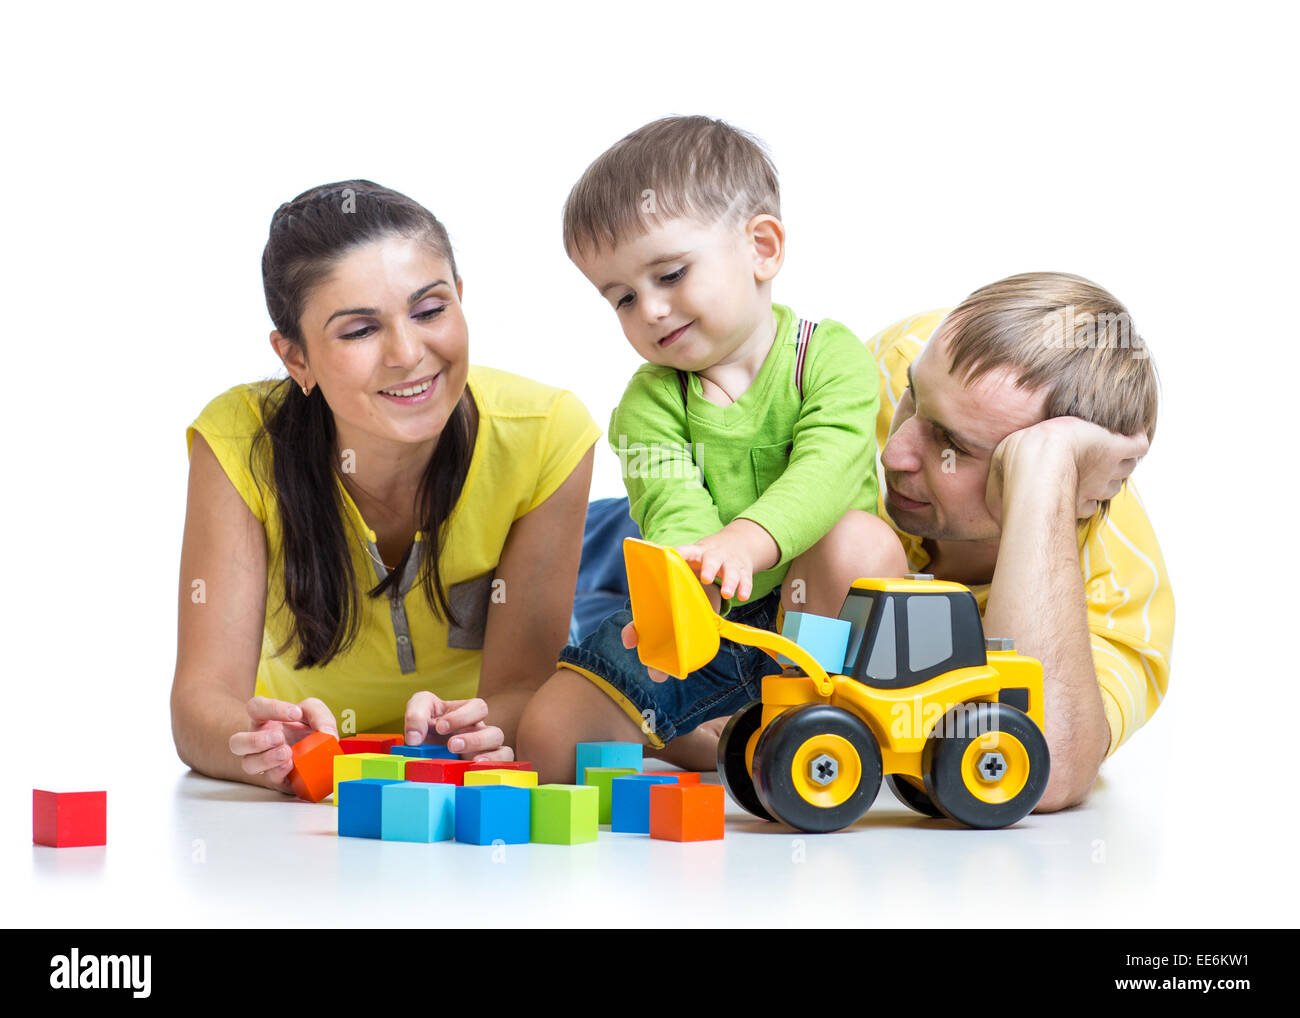 Garçon enfant avec les parents jouent building blocks Banque D'Images